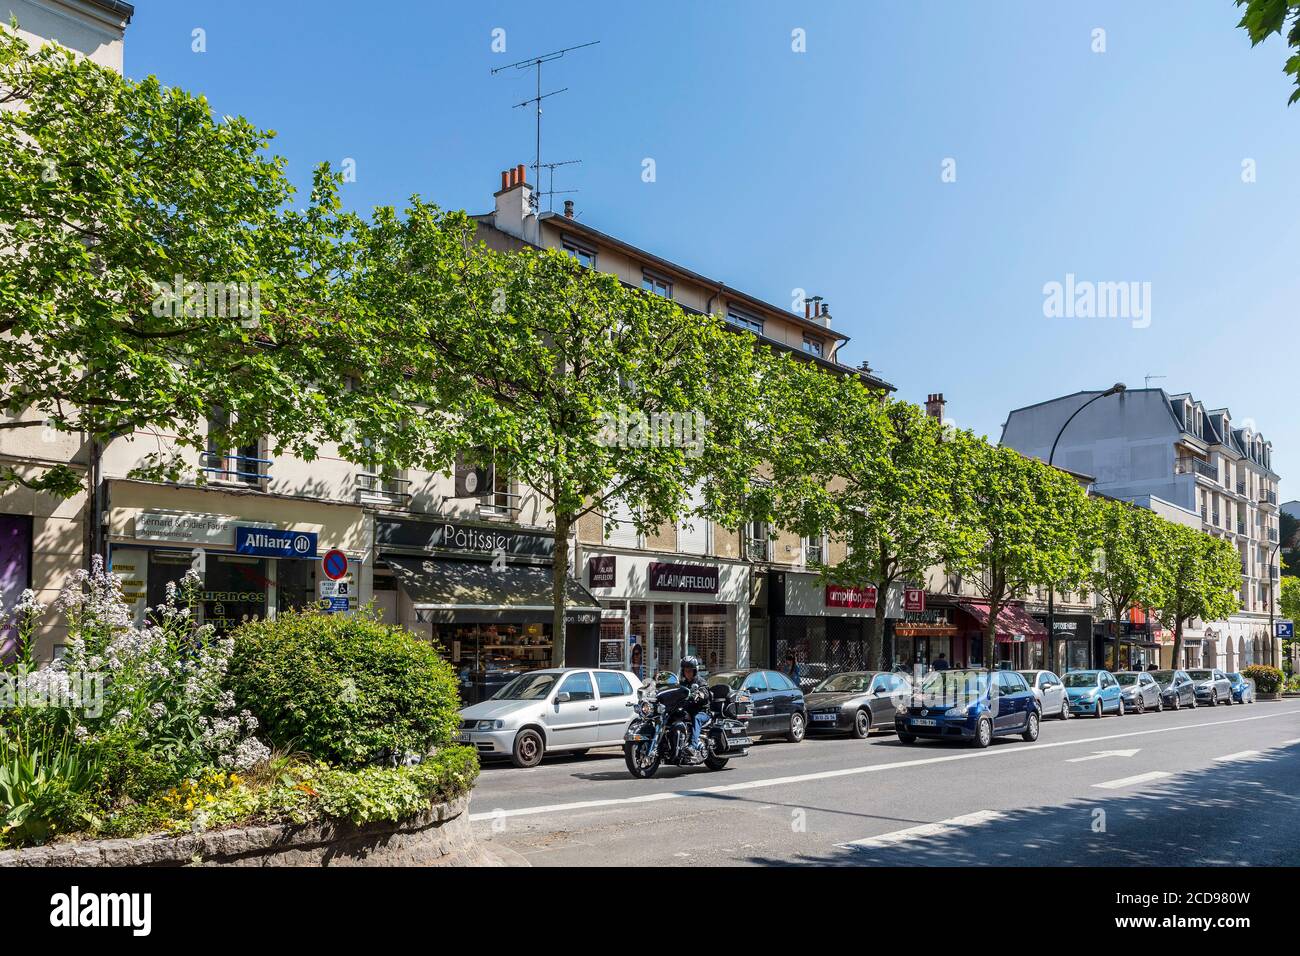 France, Seine Saint Denis, Le Raincy, Avenue of the resistance Stock Photo